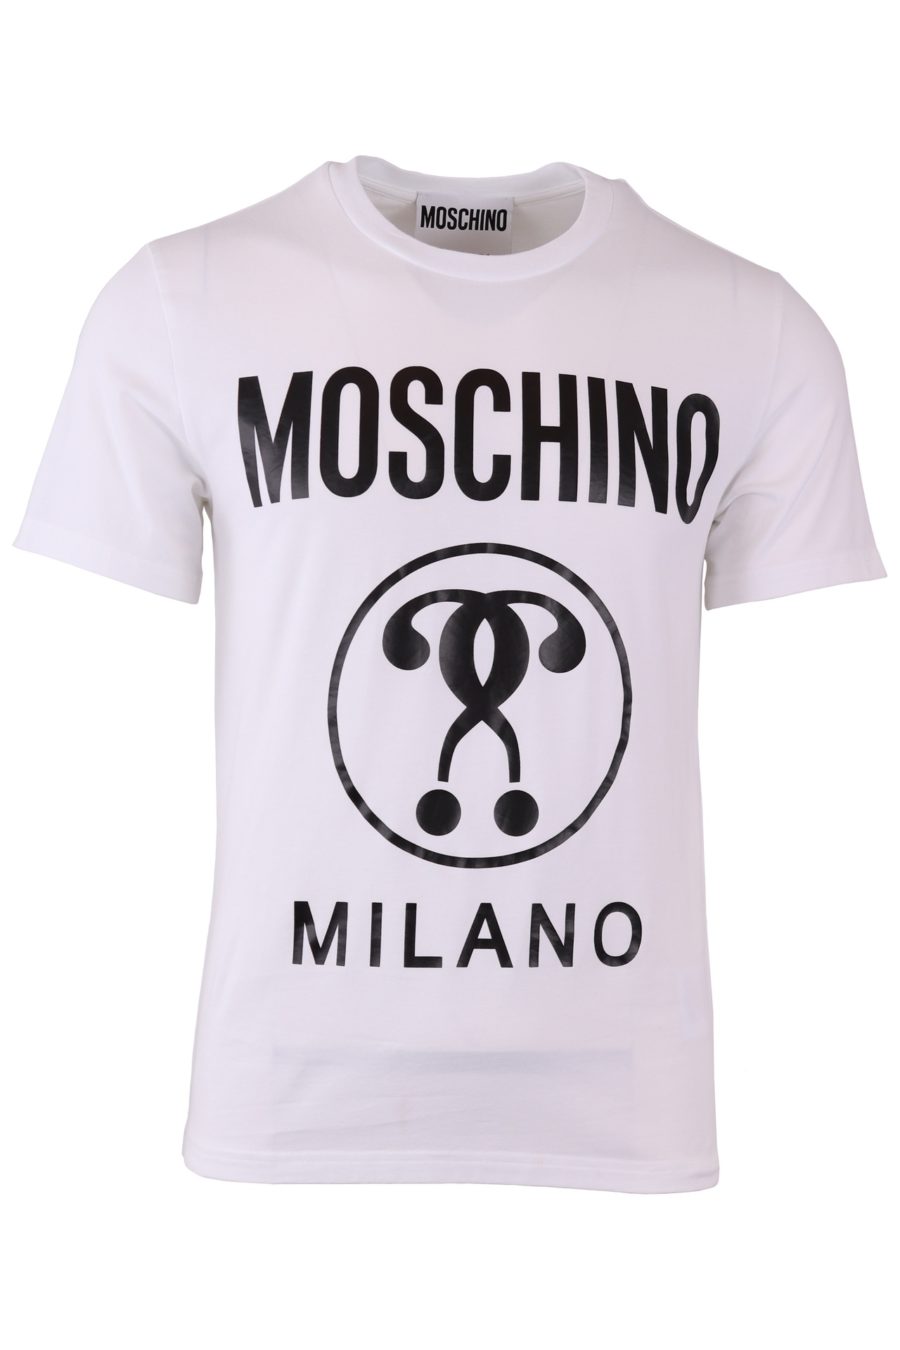 Moschino Couture T-shirt blanc avec logo et double question sur le devant - f499dbb72ce14f8fbd252834b53975ae212ac0b9